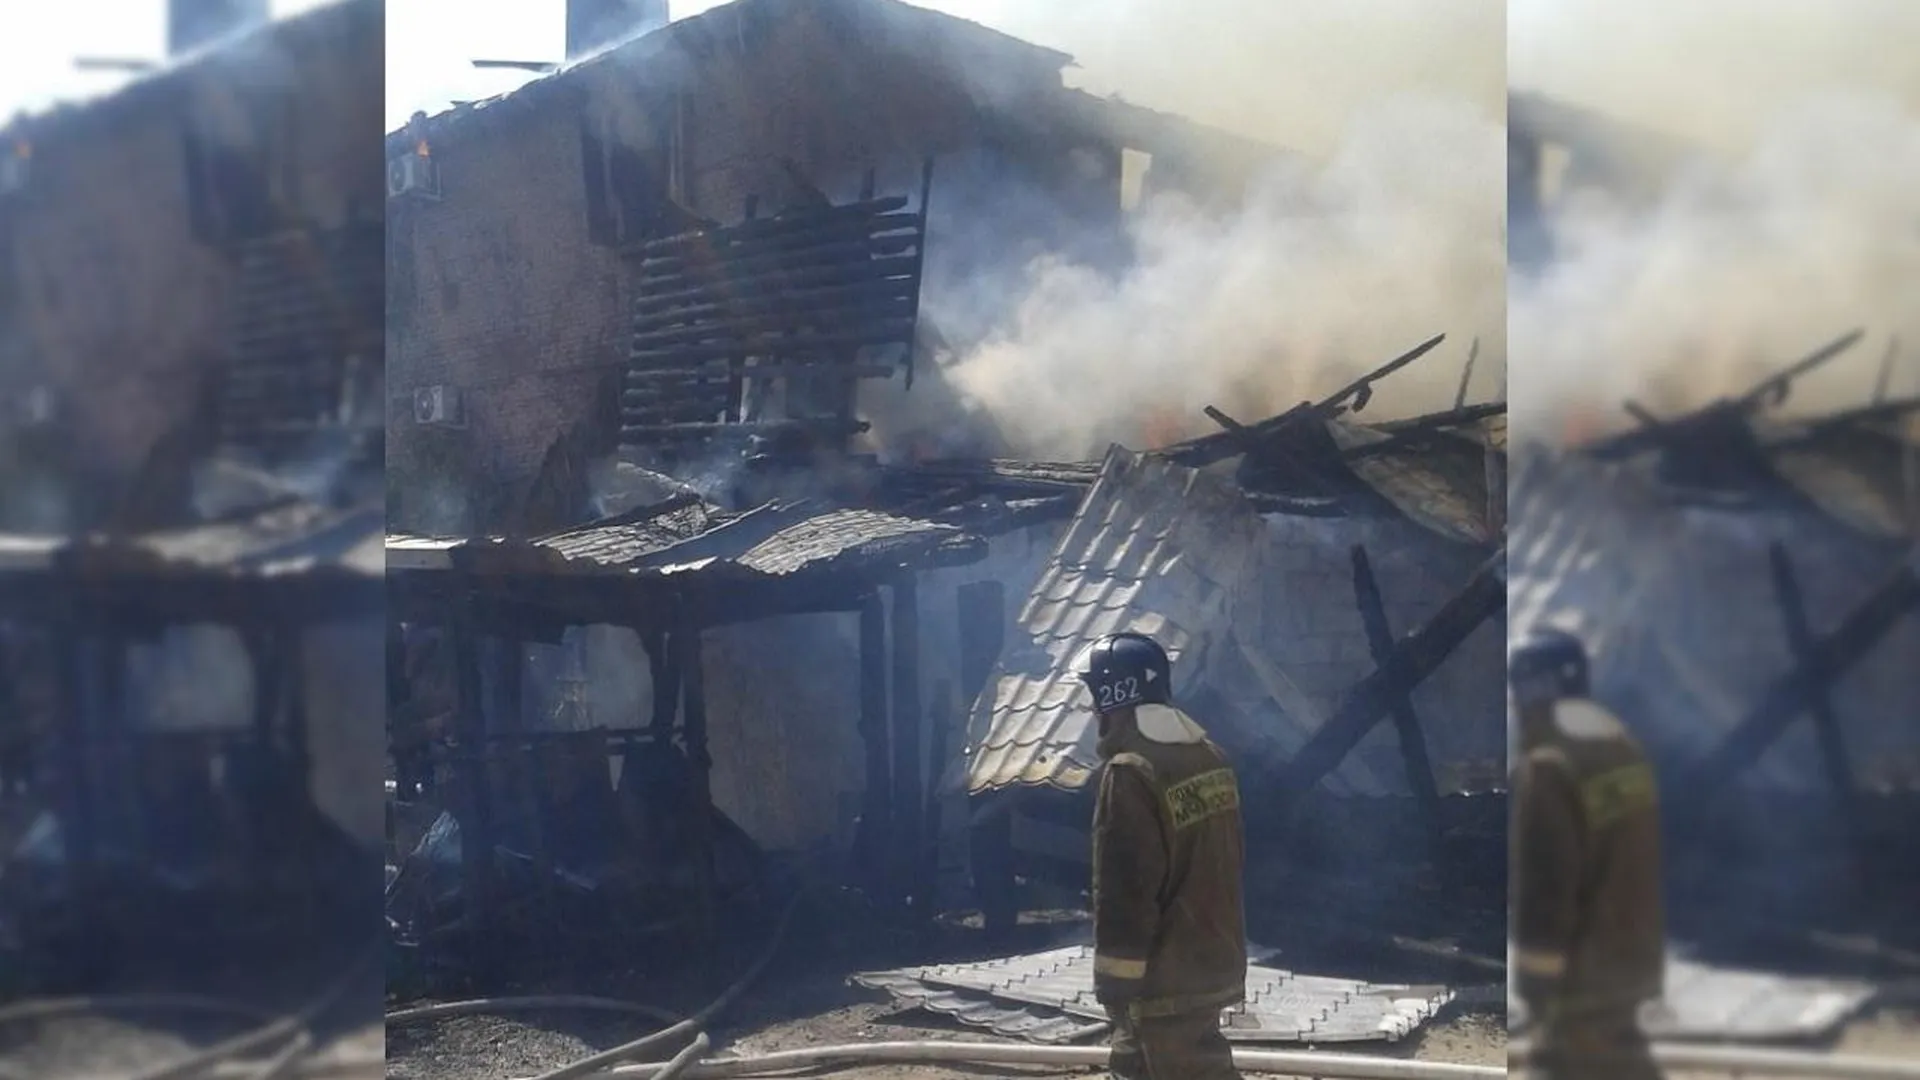 Один человек пострадал при пожаре на складе в Богородском округе Подмосковья